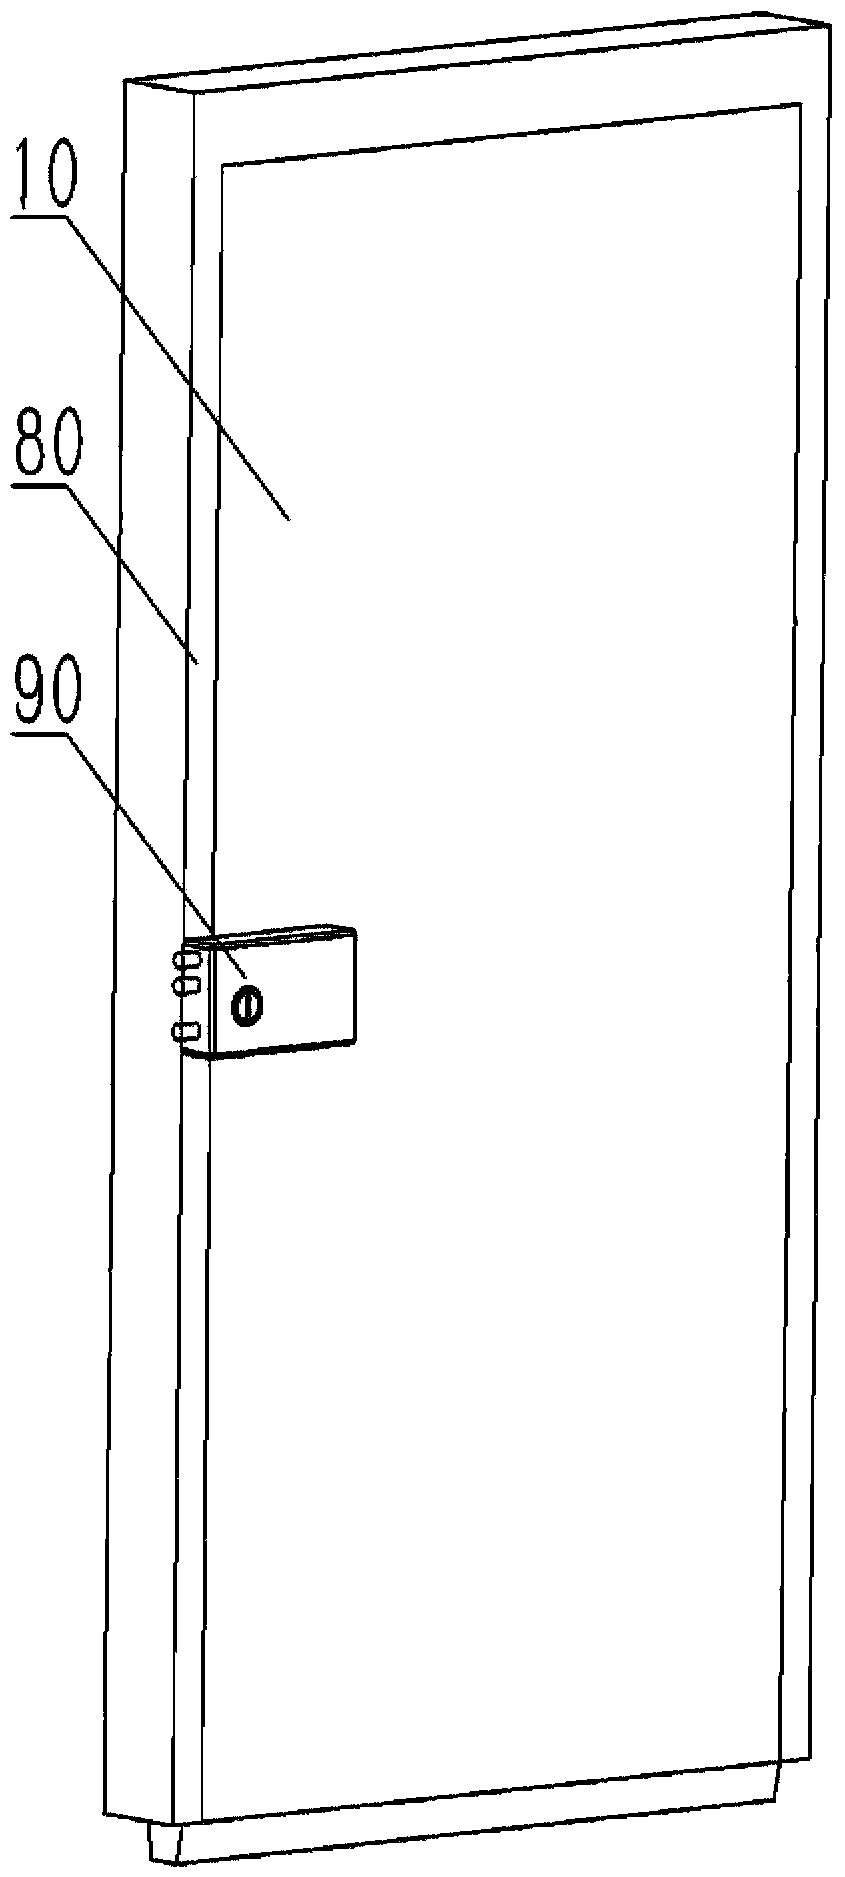 Sealing structure of wooden door